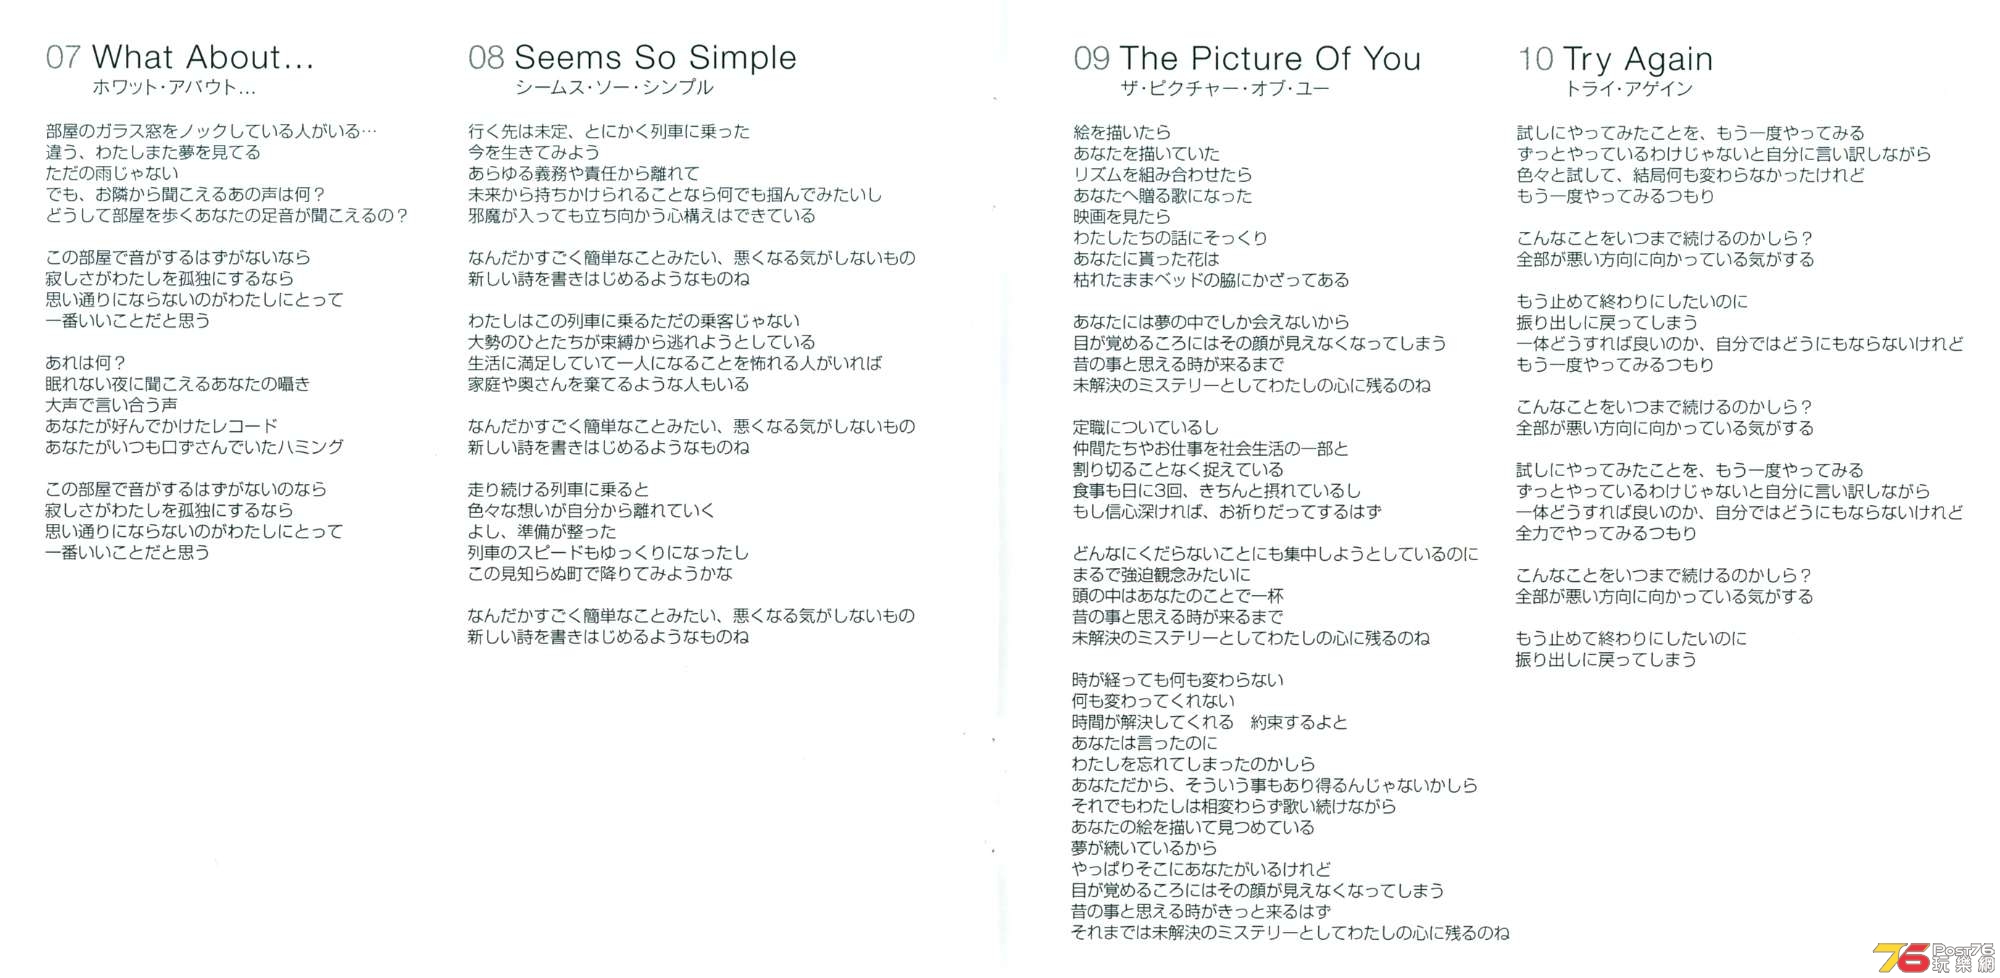 18 - A Fraction Of You (Japan) - booklet (japan) 5.jpg